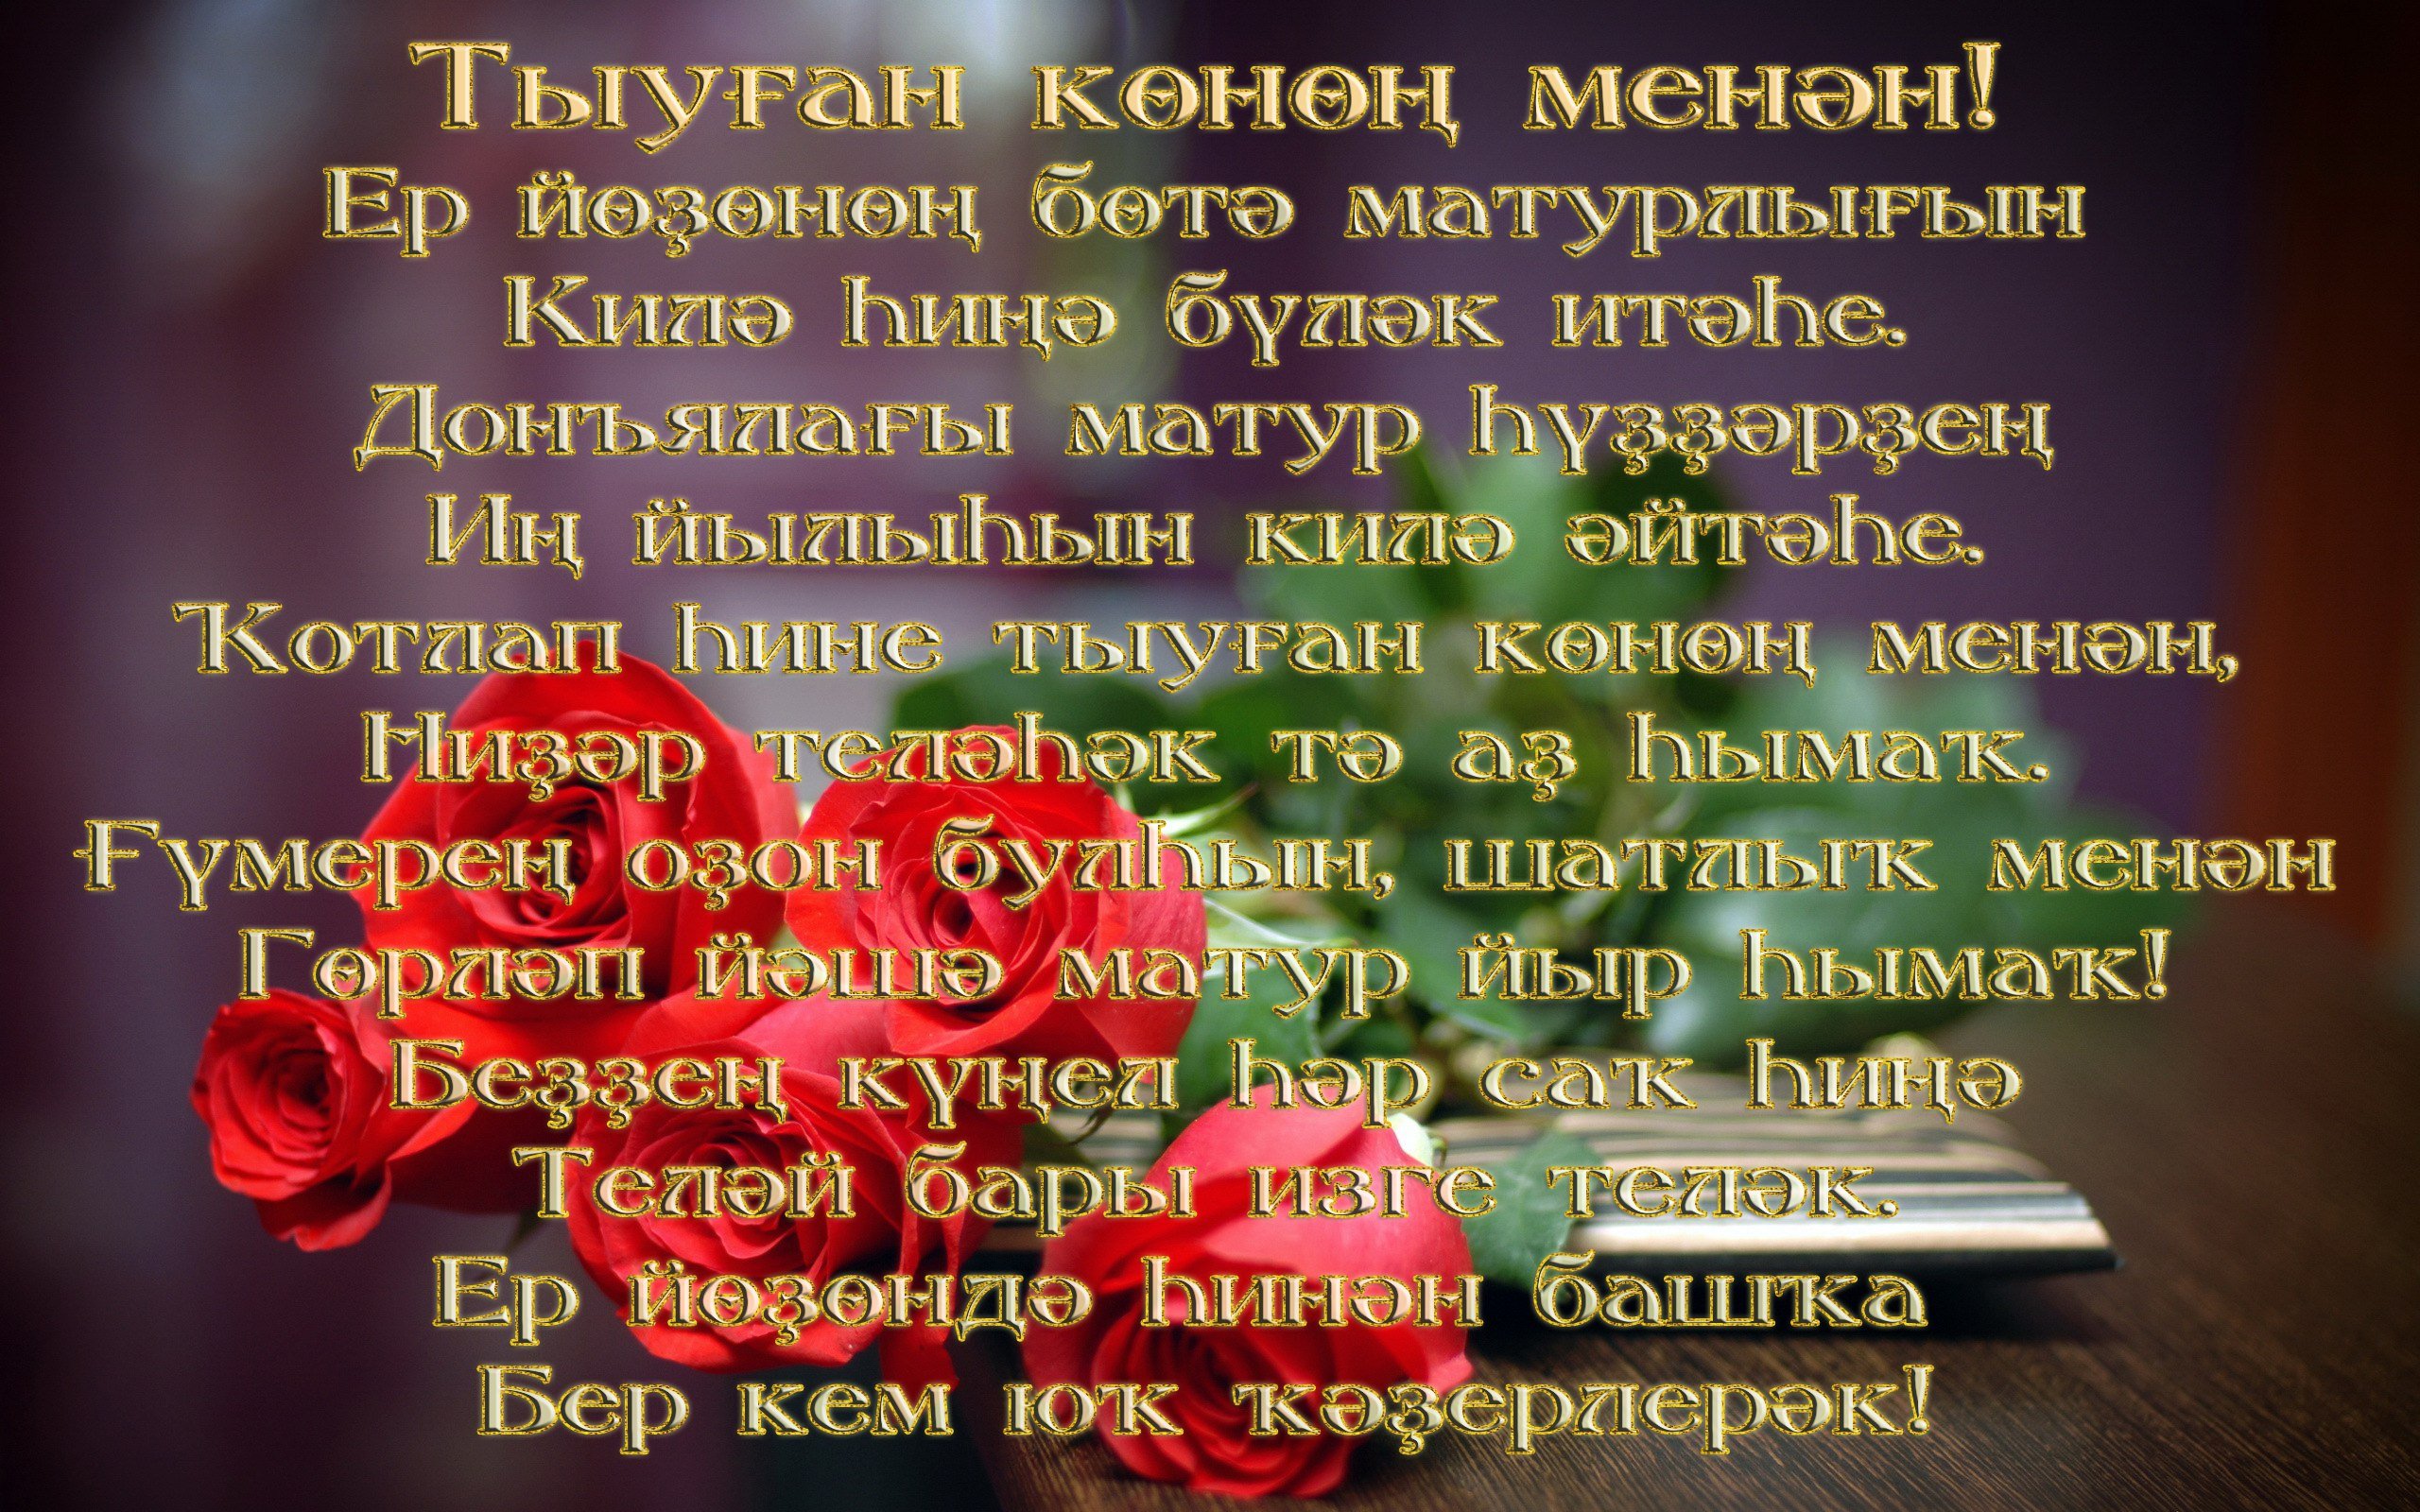 Поздравления брату с днем на татарском. Поздравления на башкирском. Поздравления с днём рождения на башкирском языке. Поздравления башкирском языке женщине. Поздравление с юбилеем на башкирском.